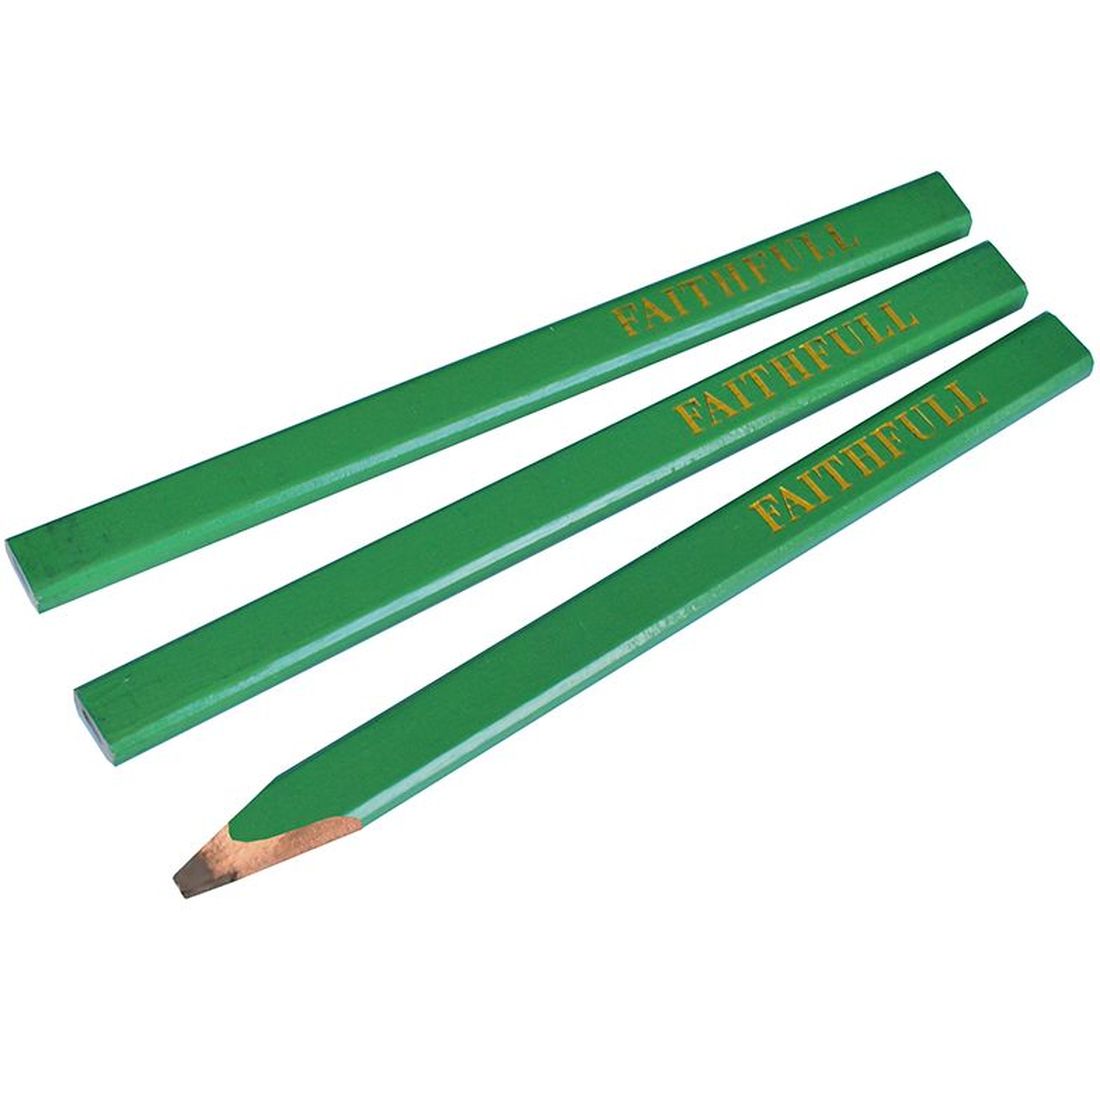 Faithfull Carpenter's Pencils - Green / Hard (Pack 3)                                     